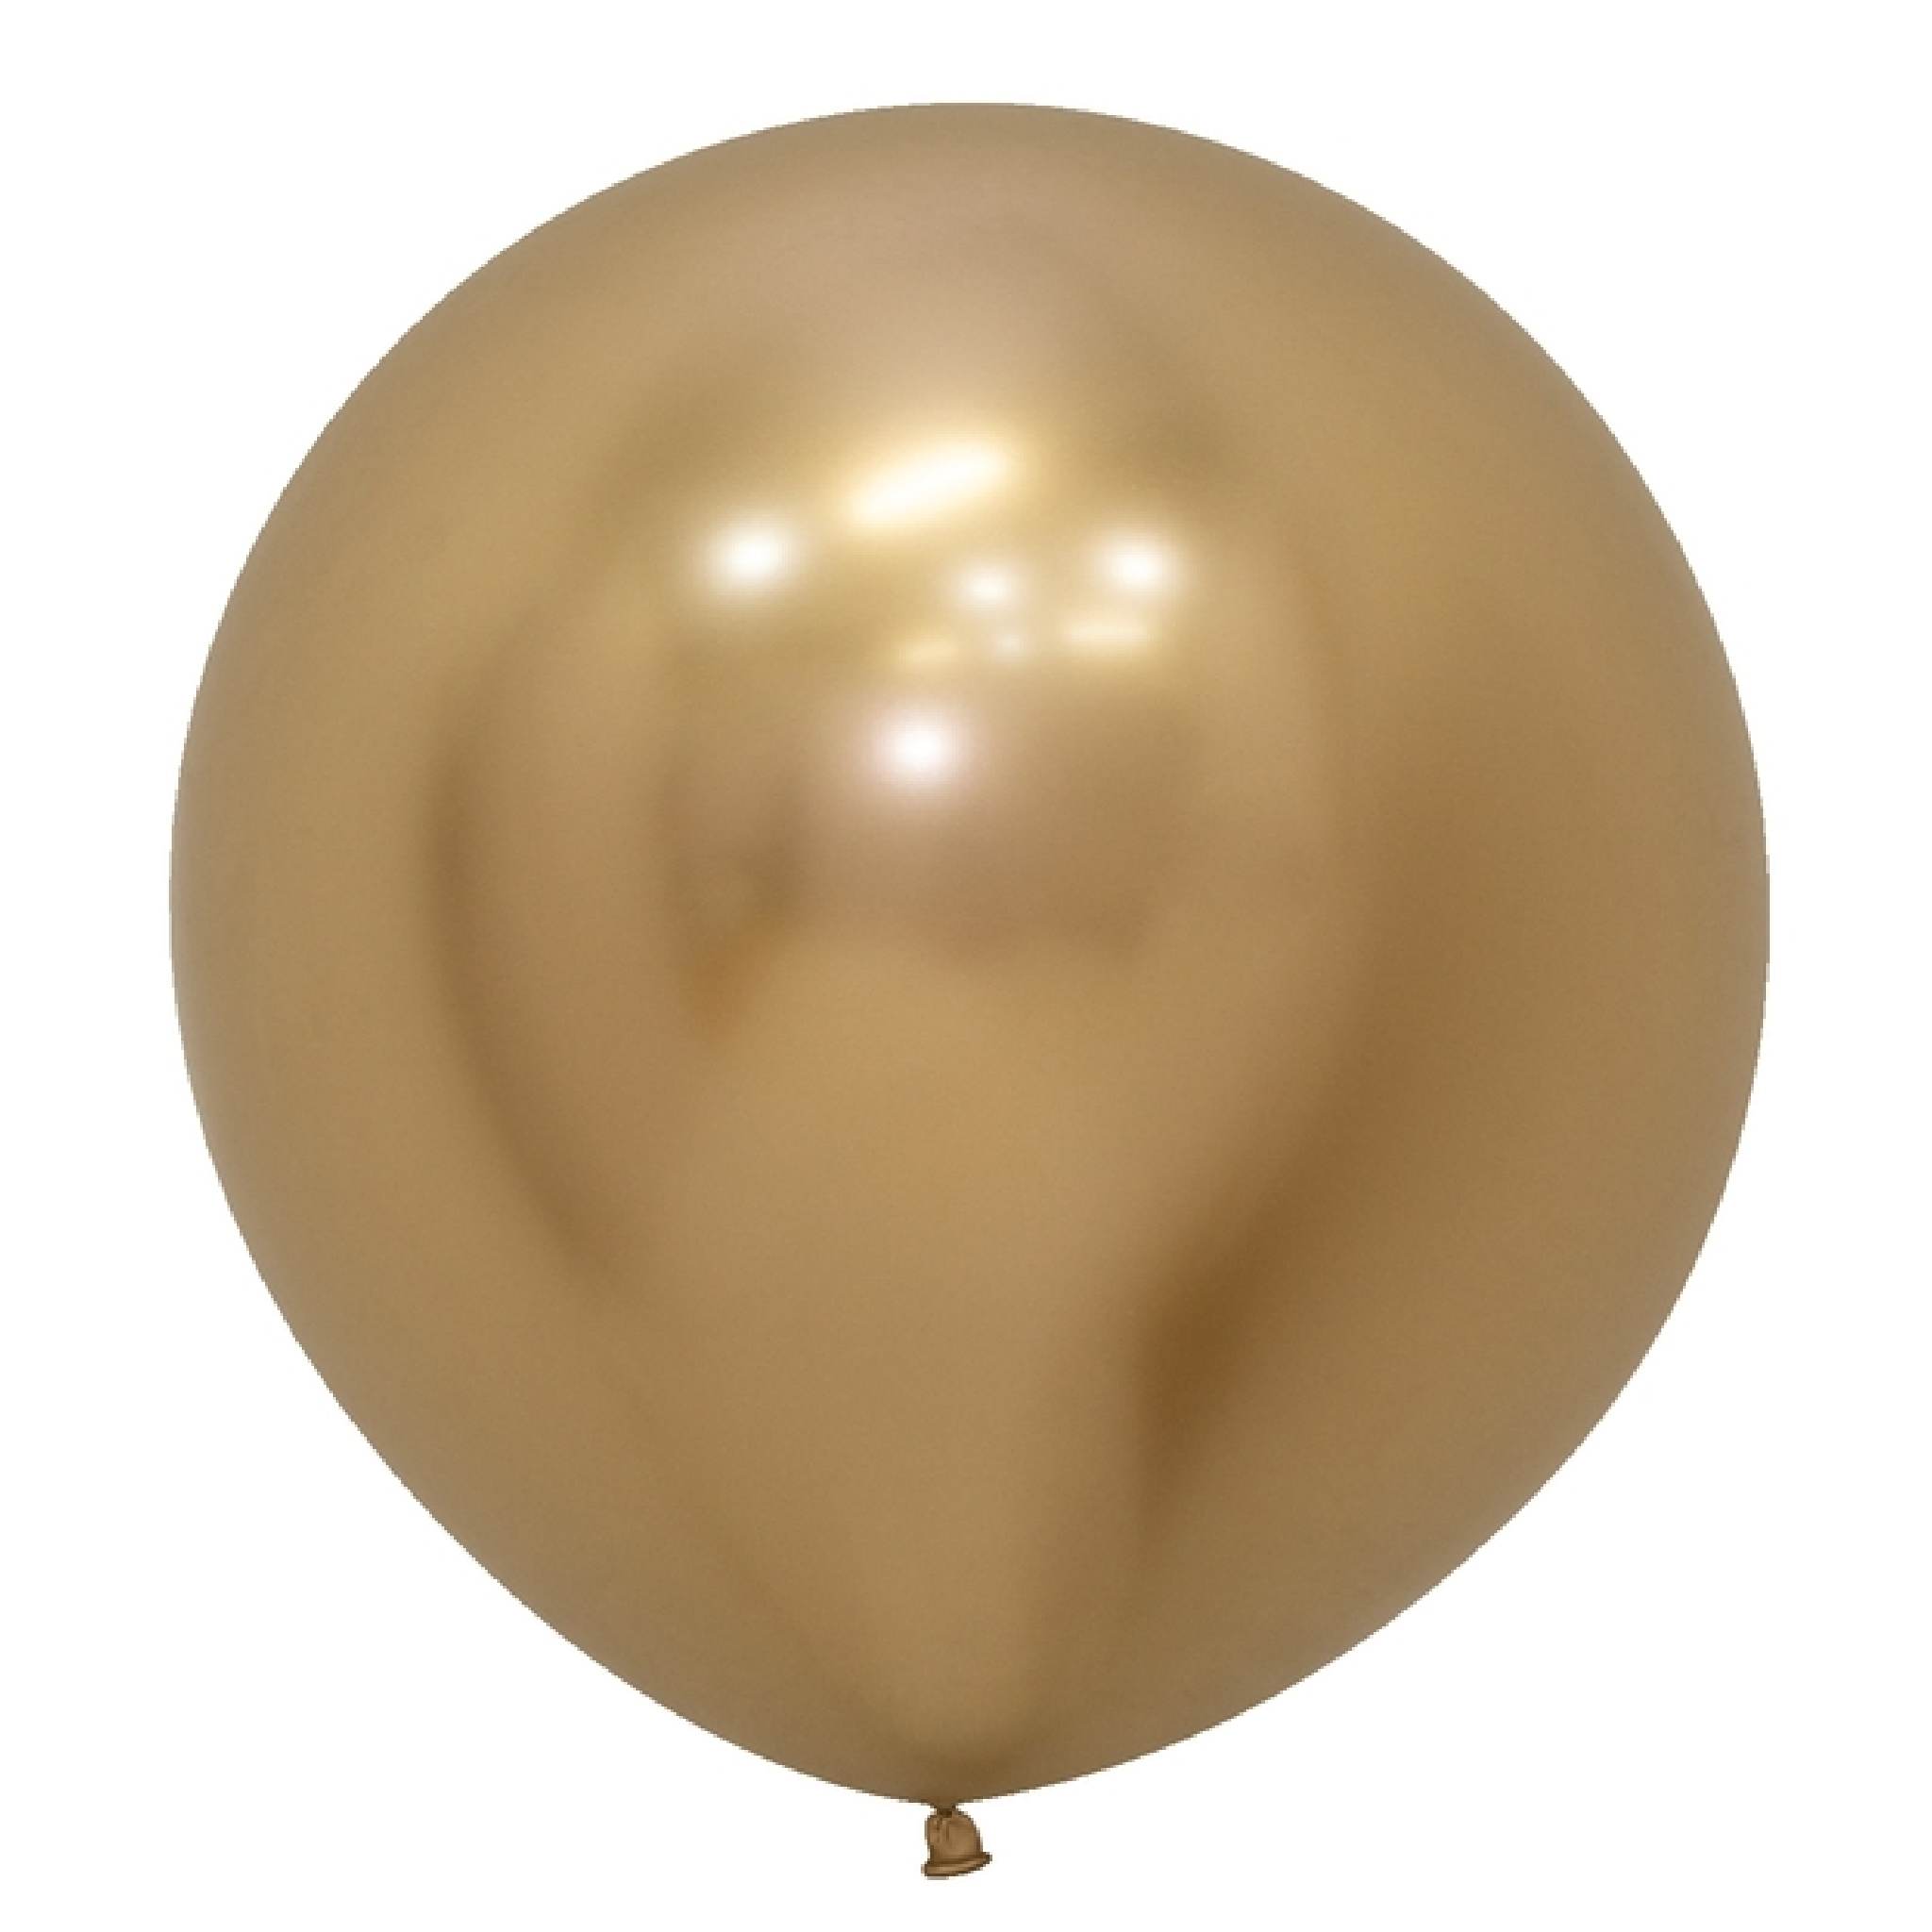 Ballon 18 ans Or métallique en latex de 30 cm REF/BAL00OR01